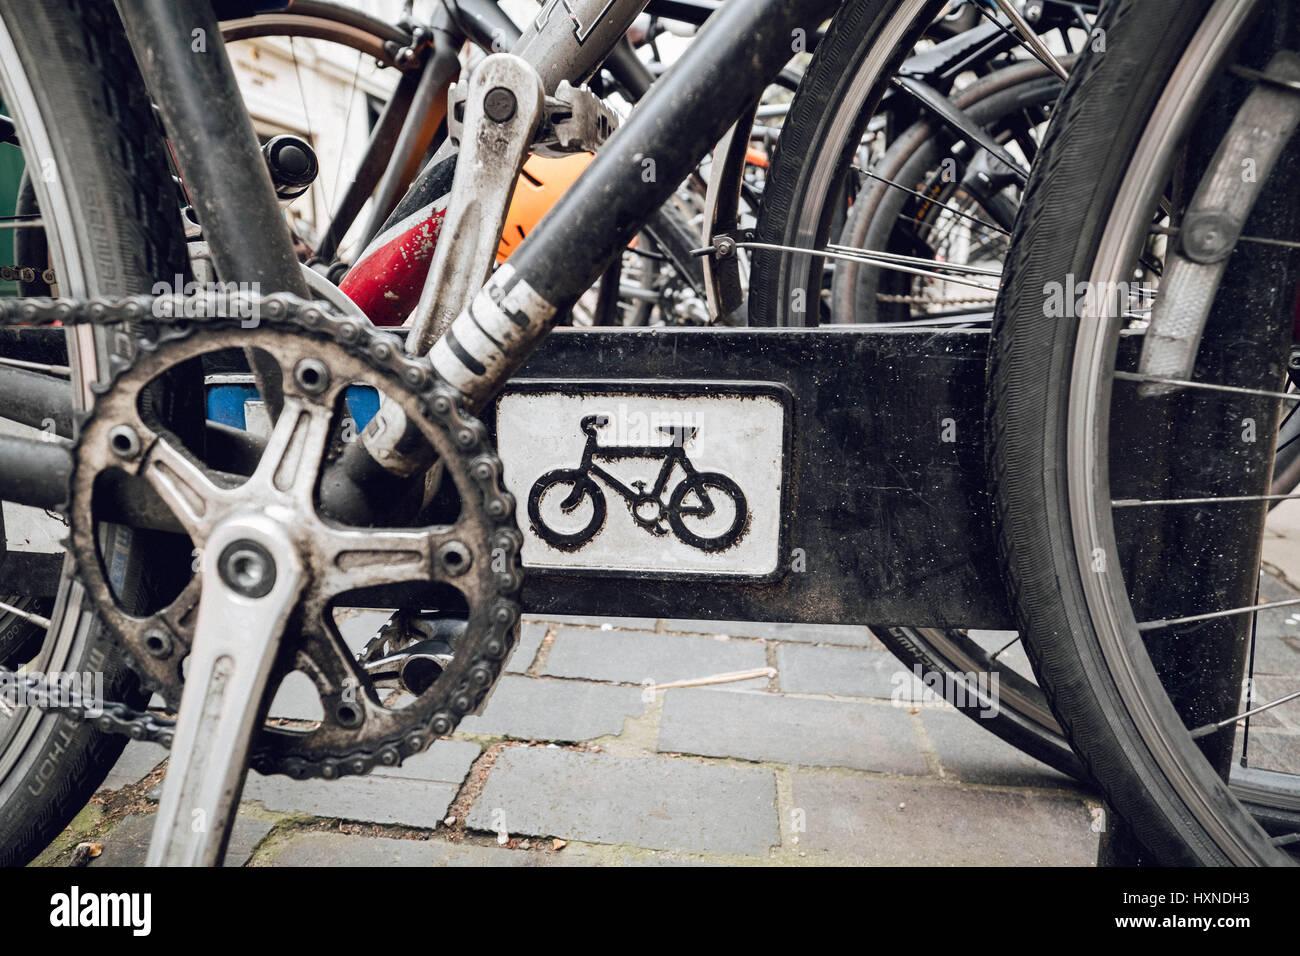 Photographie couleur de un gros plan d'un vélo / symbole signe sur un porte vélo et les nombreux vélos qui l'entourent. Banque D'Images